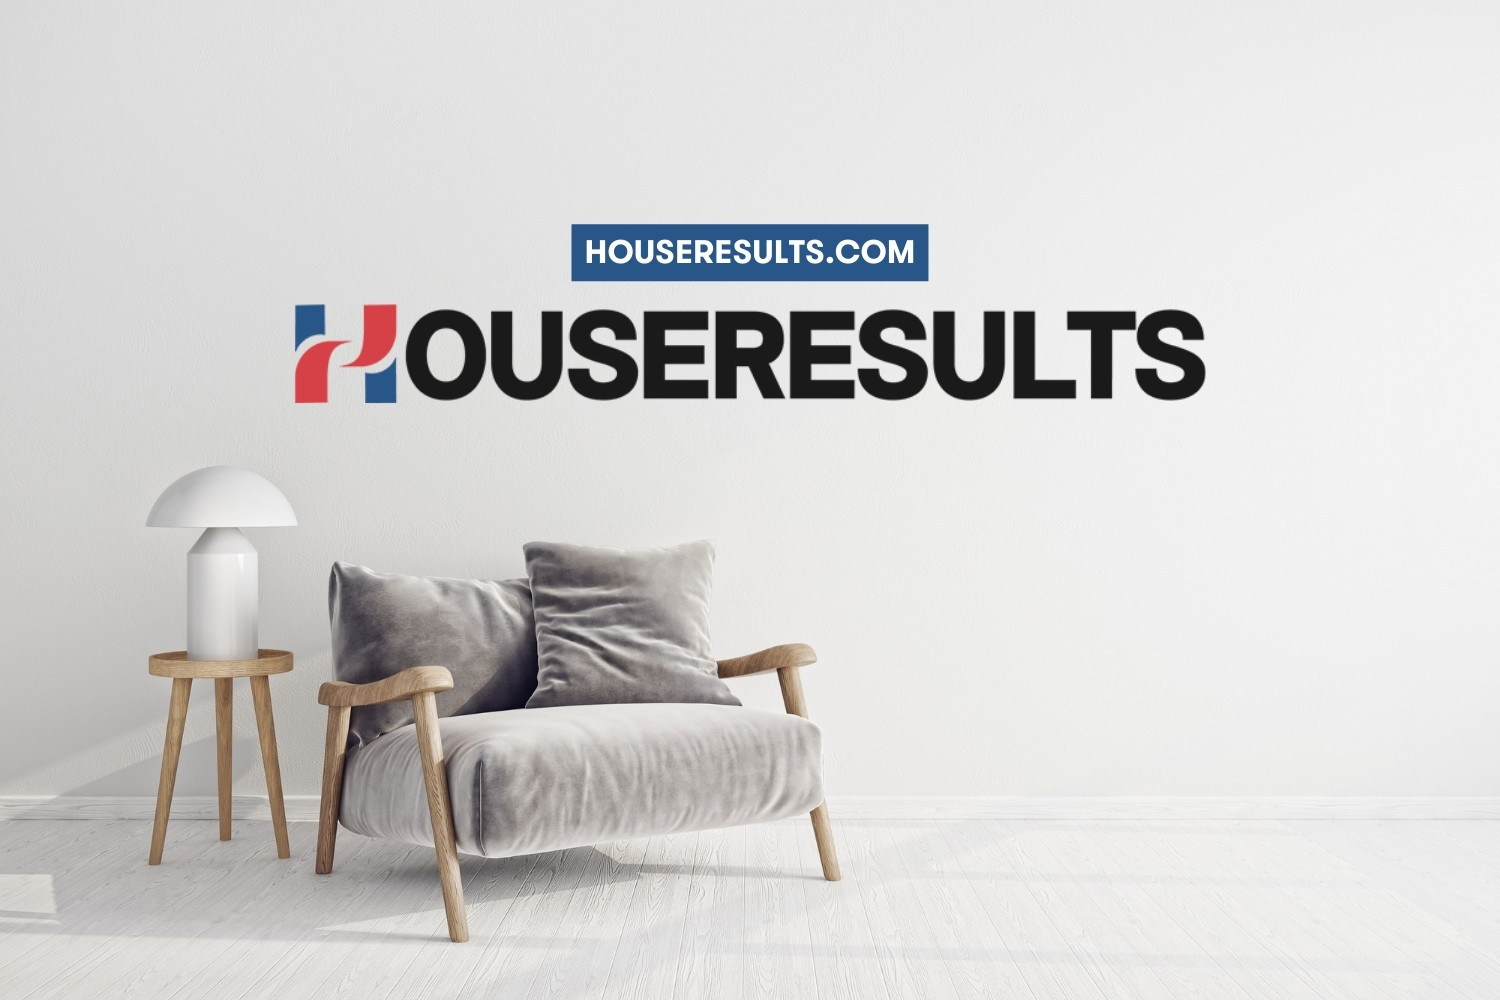 houseresults.com